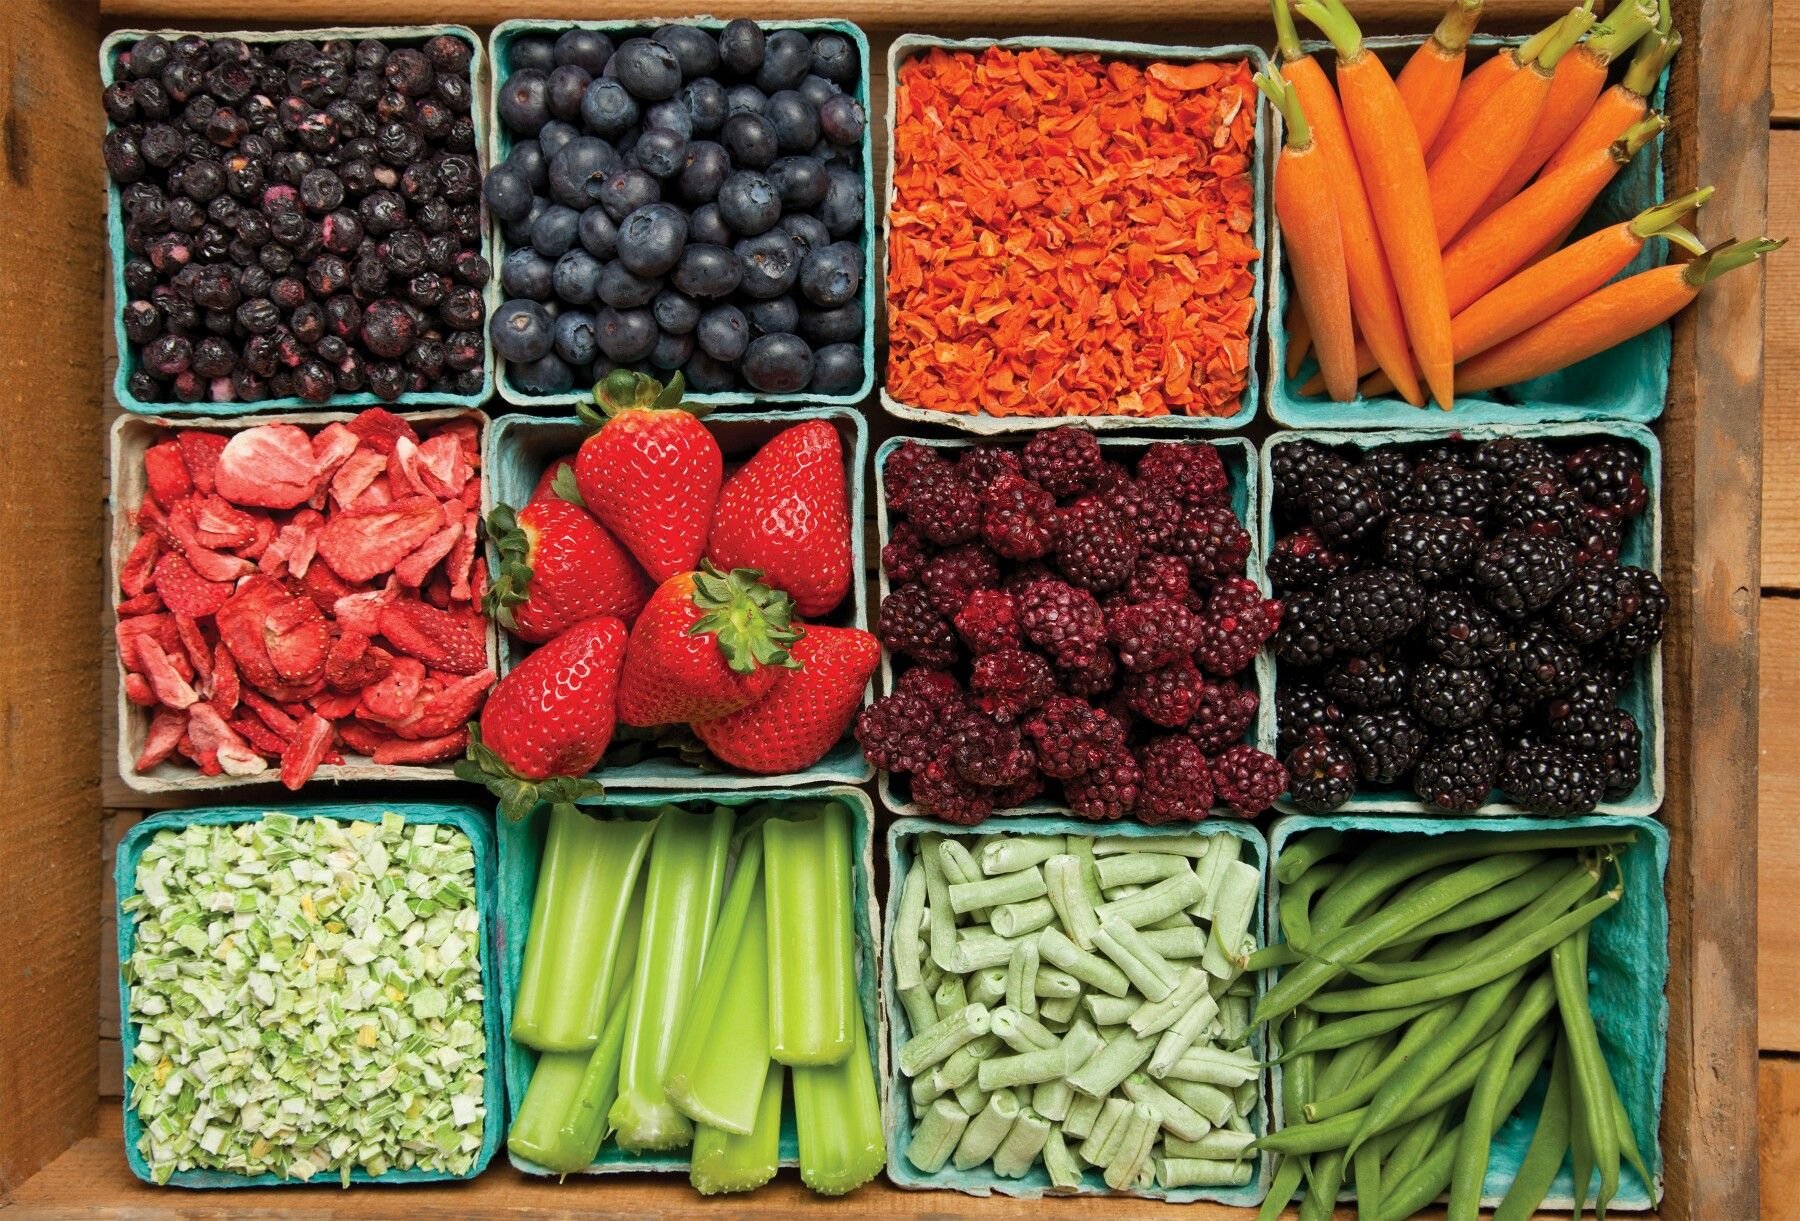 Производитель свежих овощей. Овощи, фрукты, ягоды. Овощи разные. Плоды и овощи. Хранение и переработка плодов и овощей.